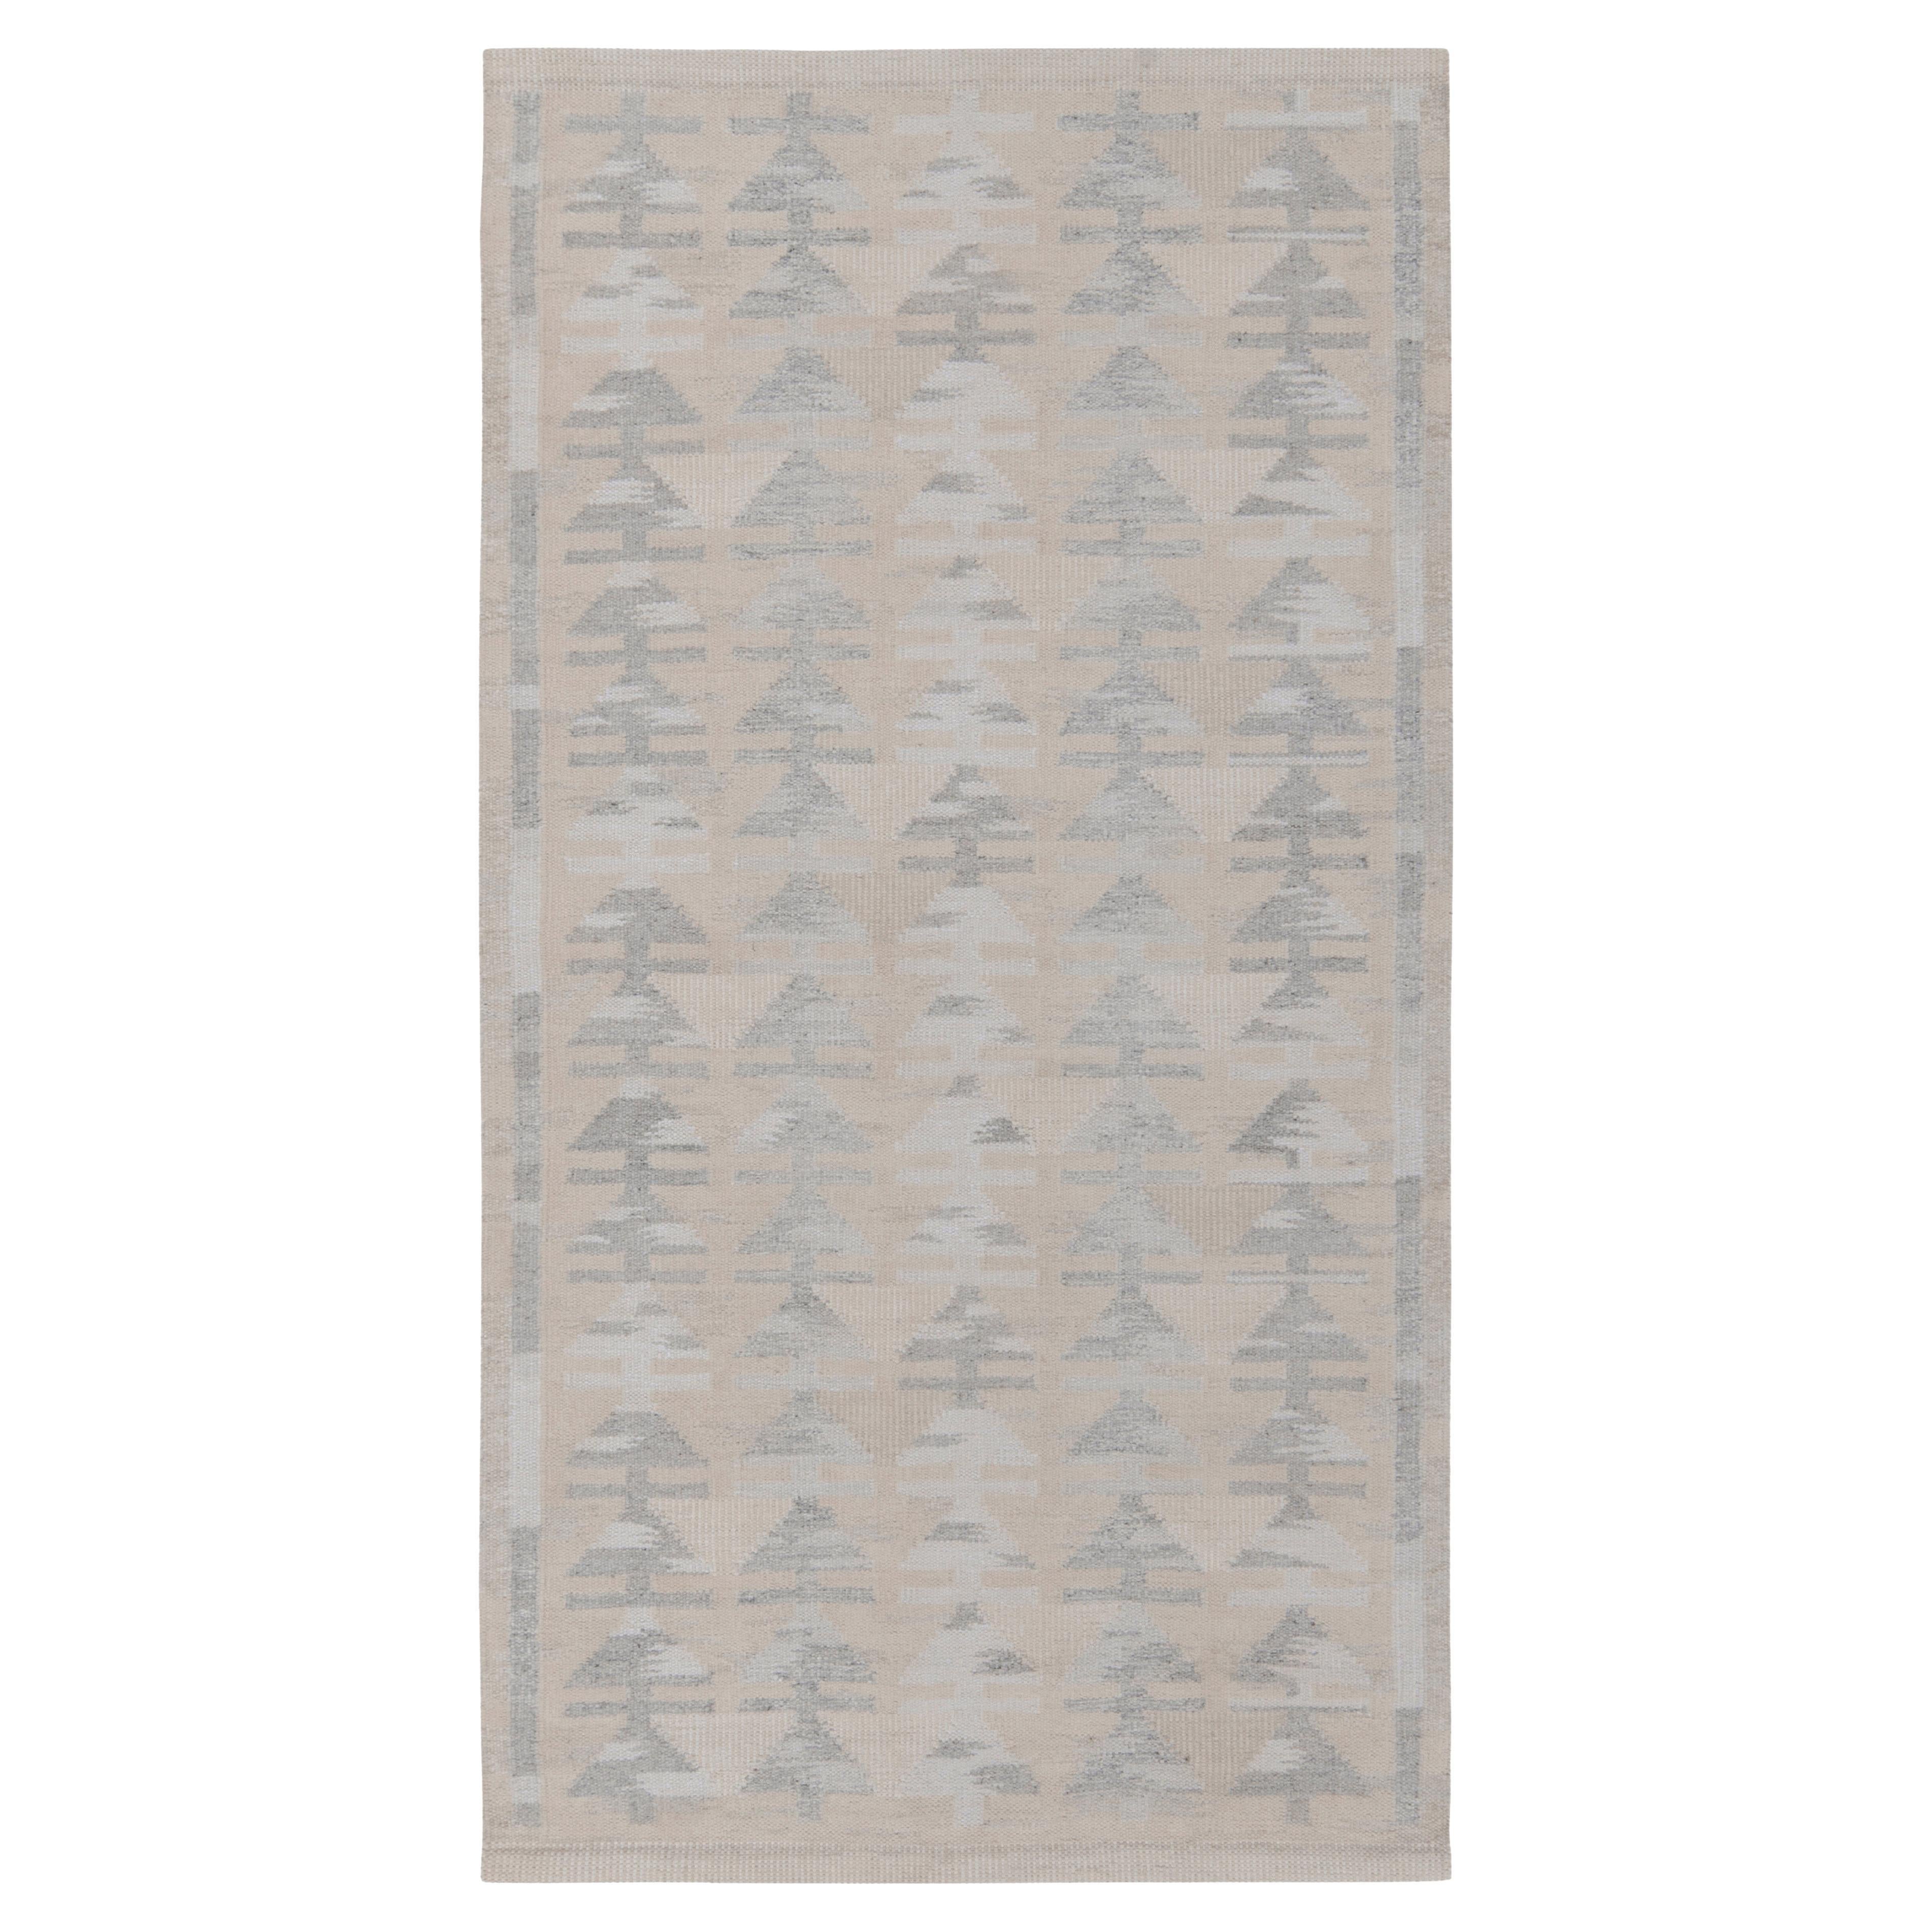 Teppich & Kelim-Teppich im skandinavischen Stil in Grau & Weiß mit geometrischem Muster